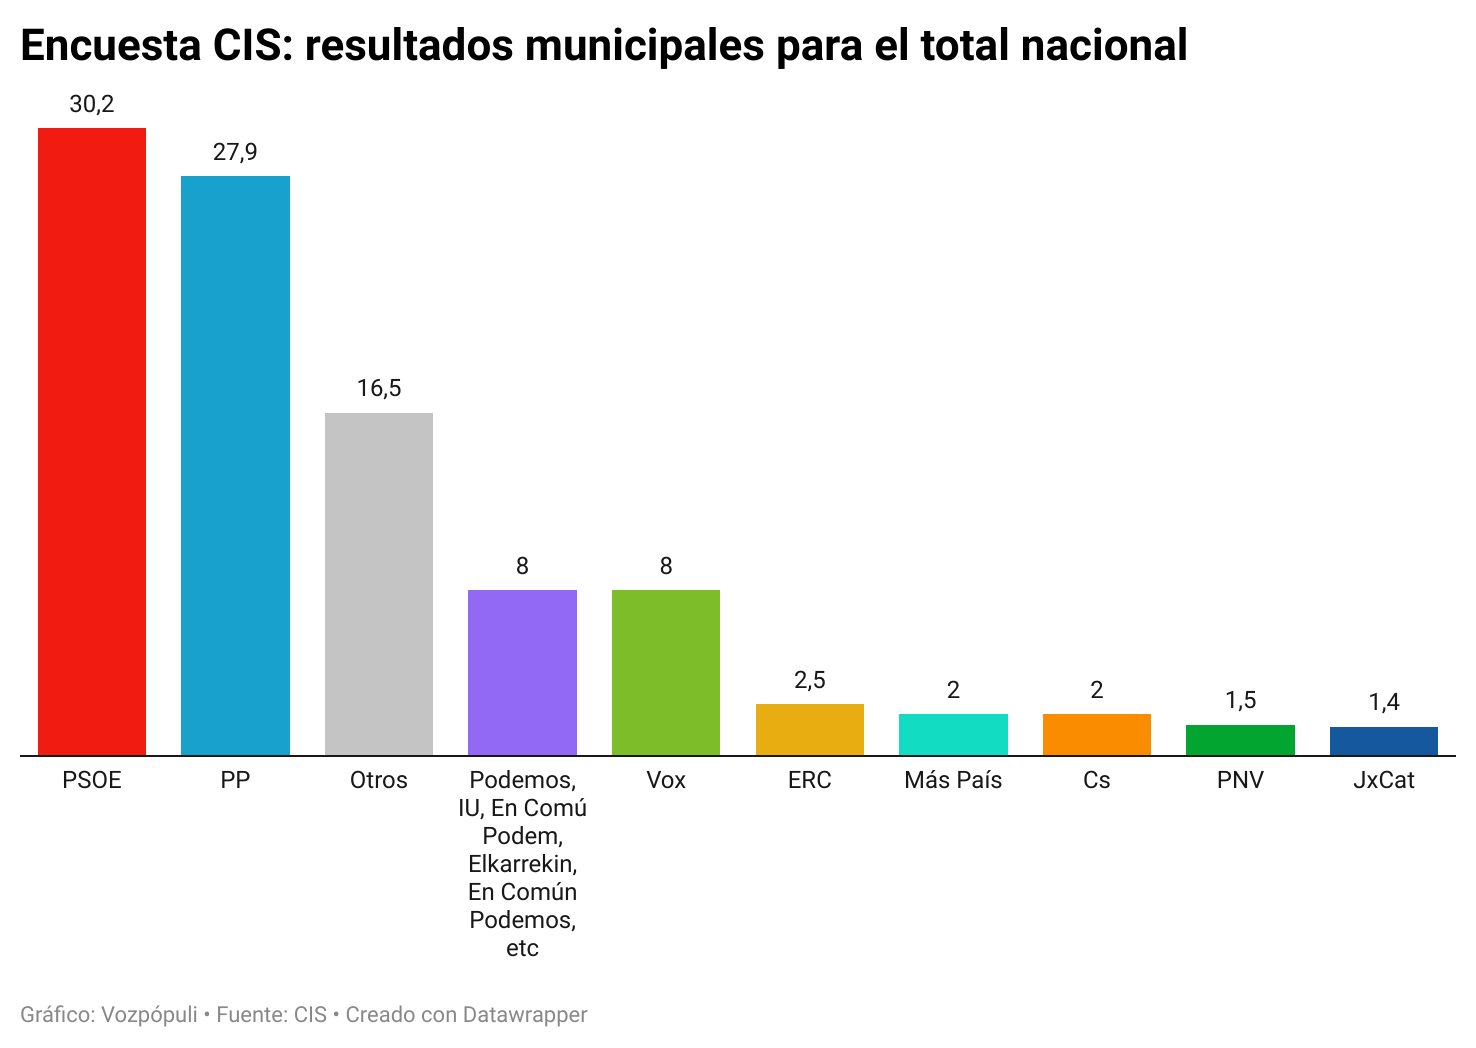 El PSOE aventaja en tres puntos al PP en las elecciones municipales del 28-M, según el CIS